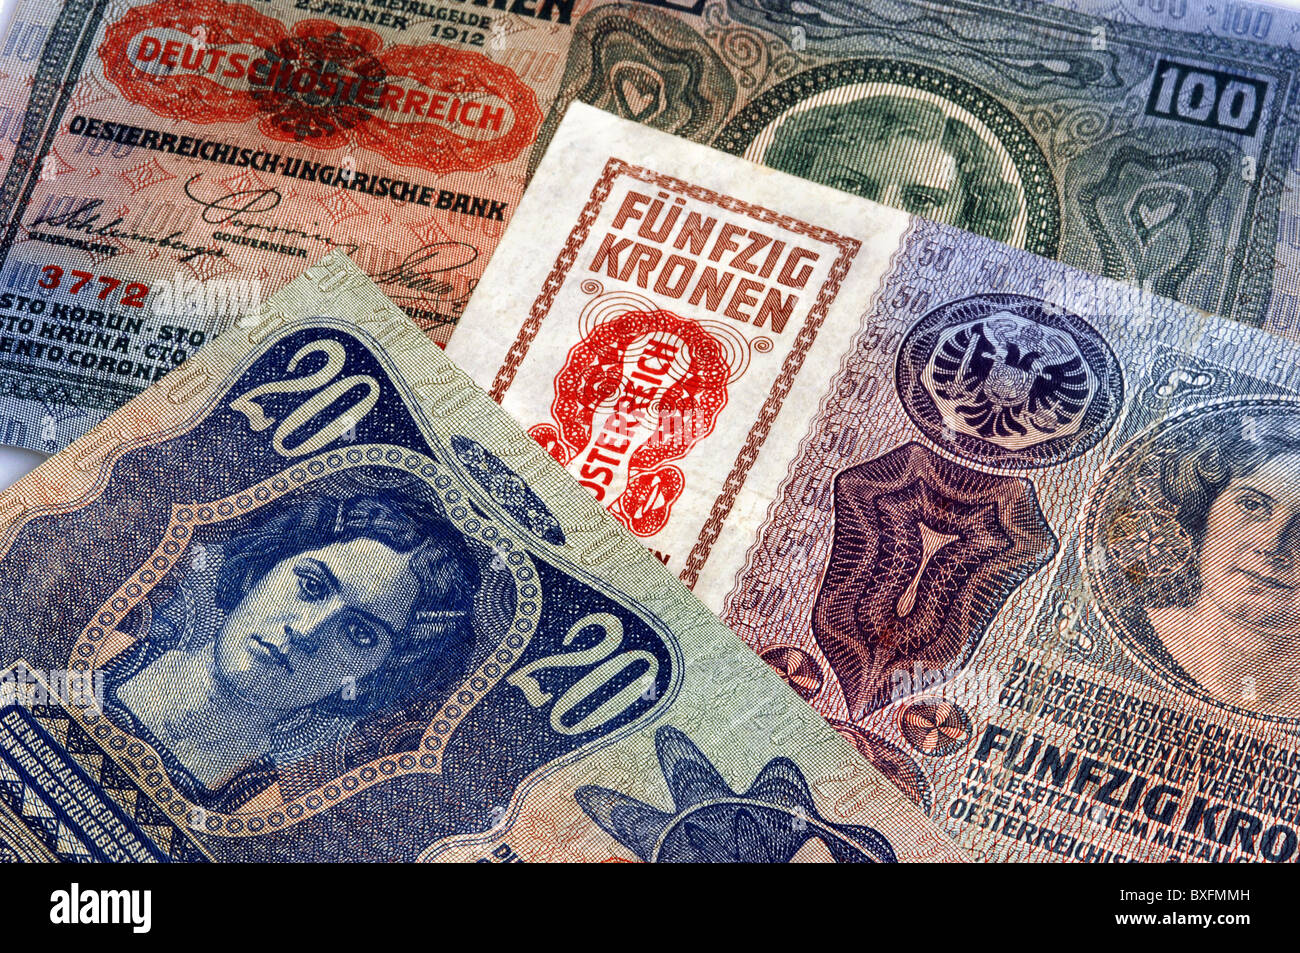 Monnaie / finances, billets de banque, Autriche, billets de banque, Vienne, 1912, droits additionnels-Clearences-non disponible Banque D'Images